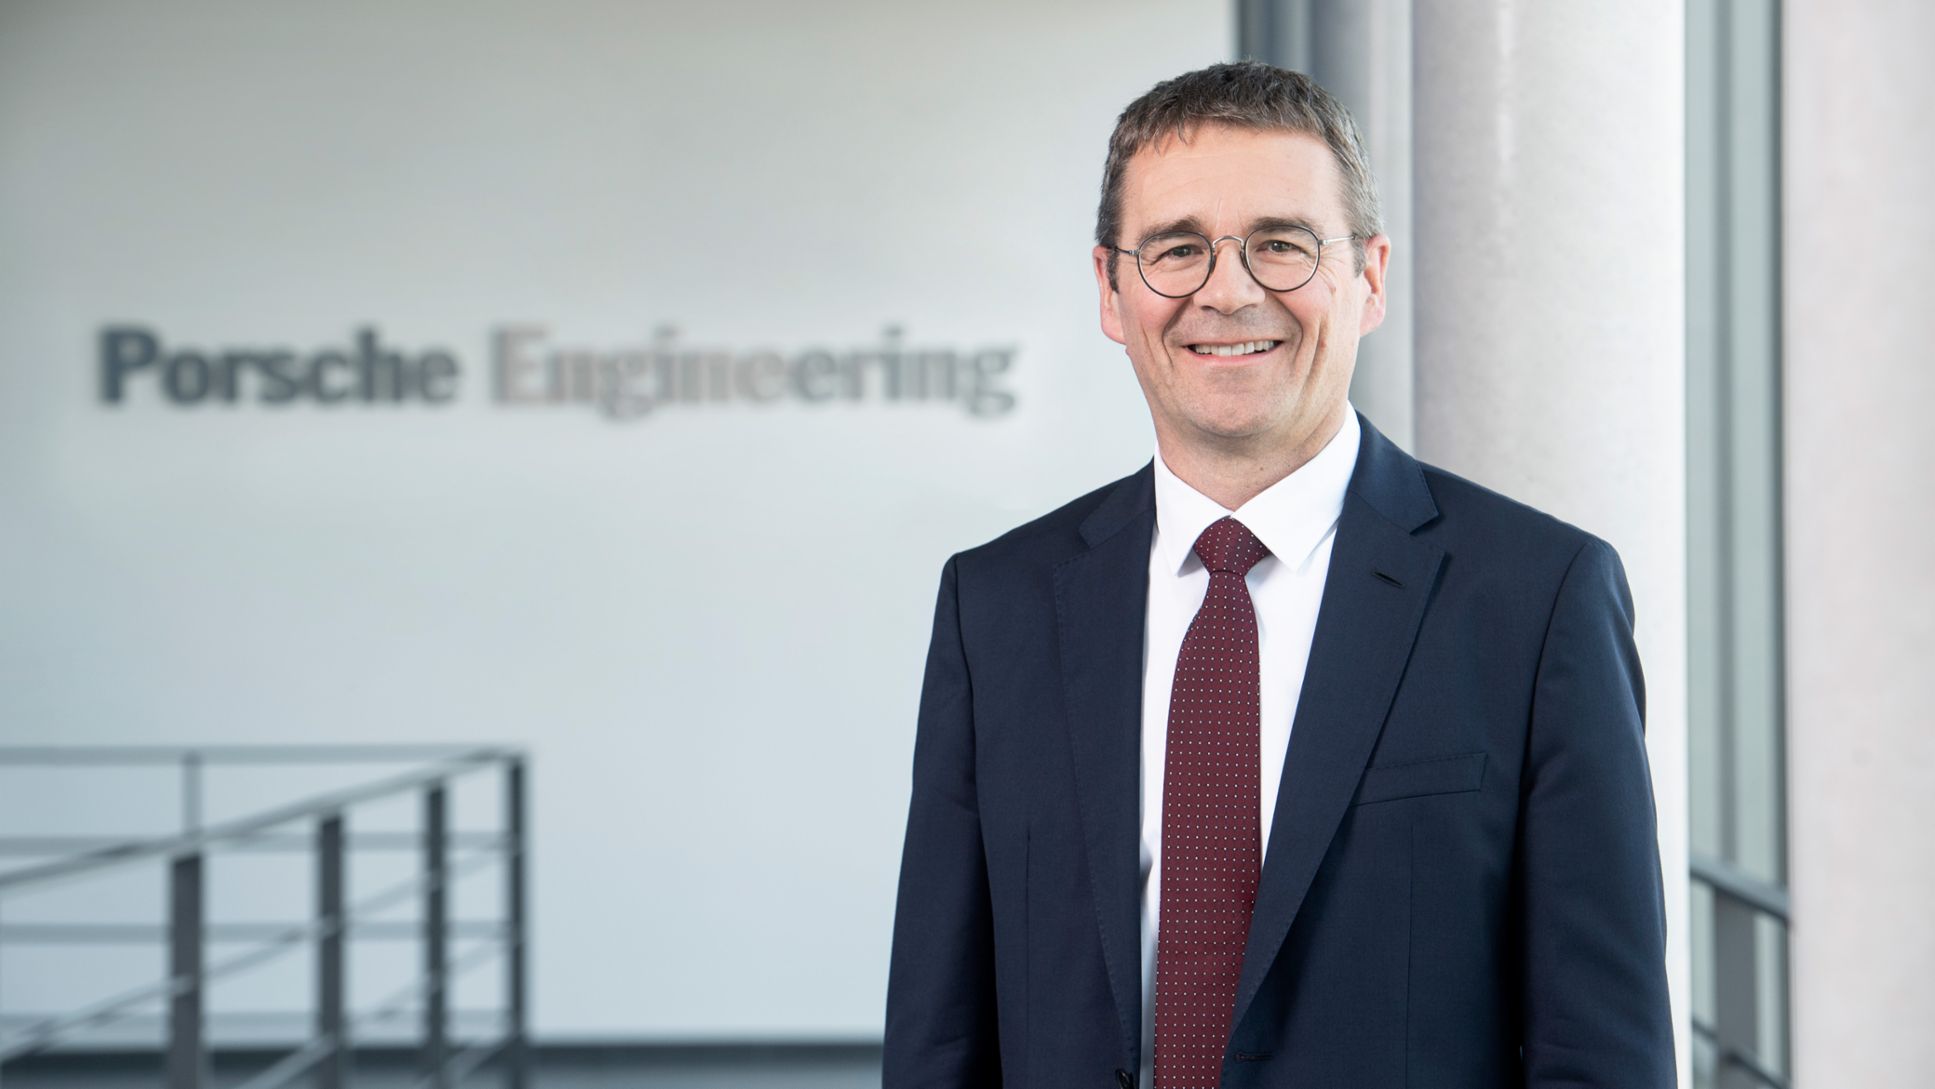 Dr. Peter Schäfer, Vorsitzender der Geschäftsführung bei Porsche Engineering, 2019 Porsche AG